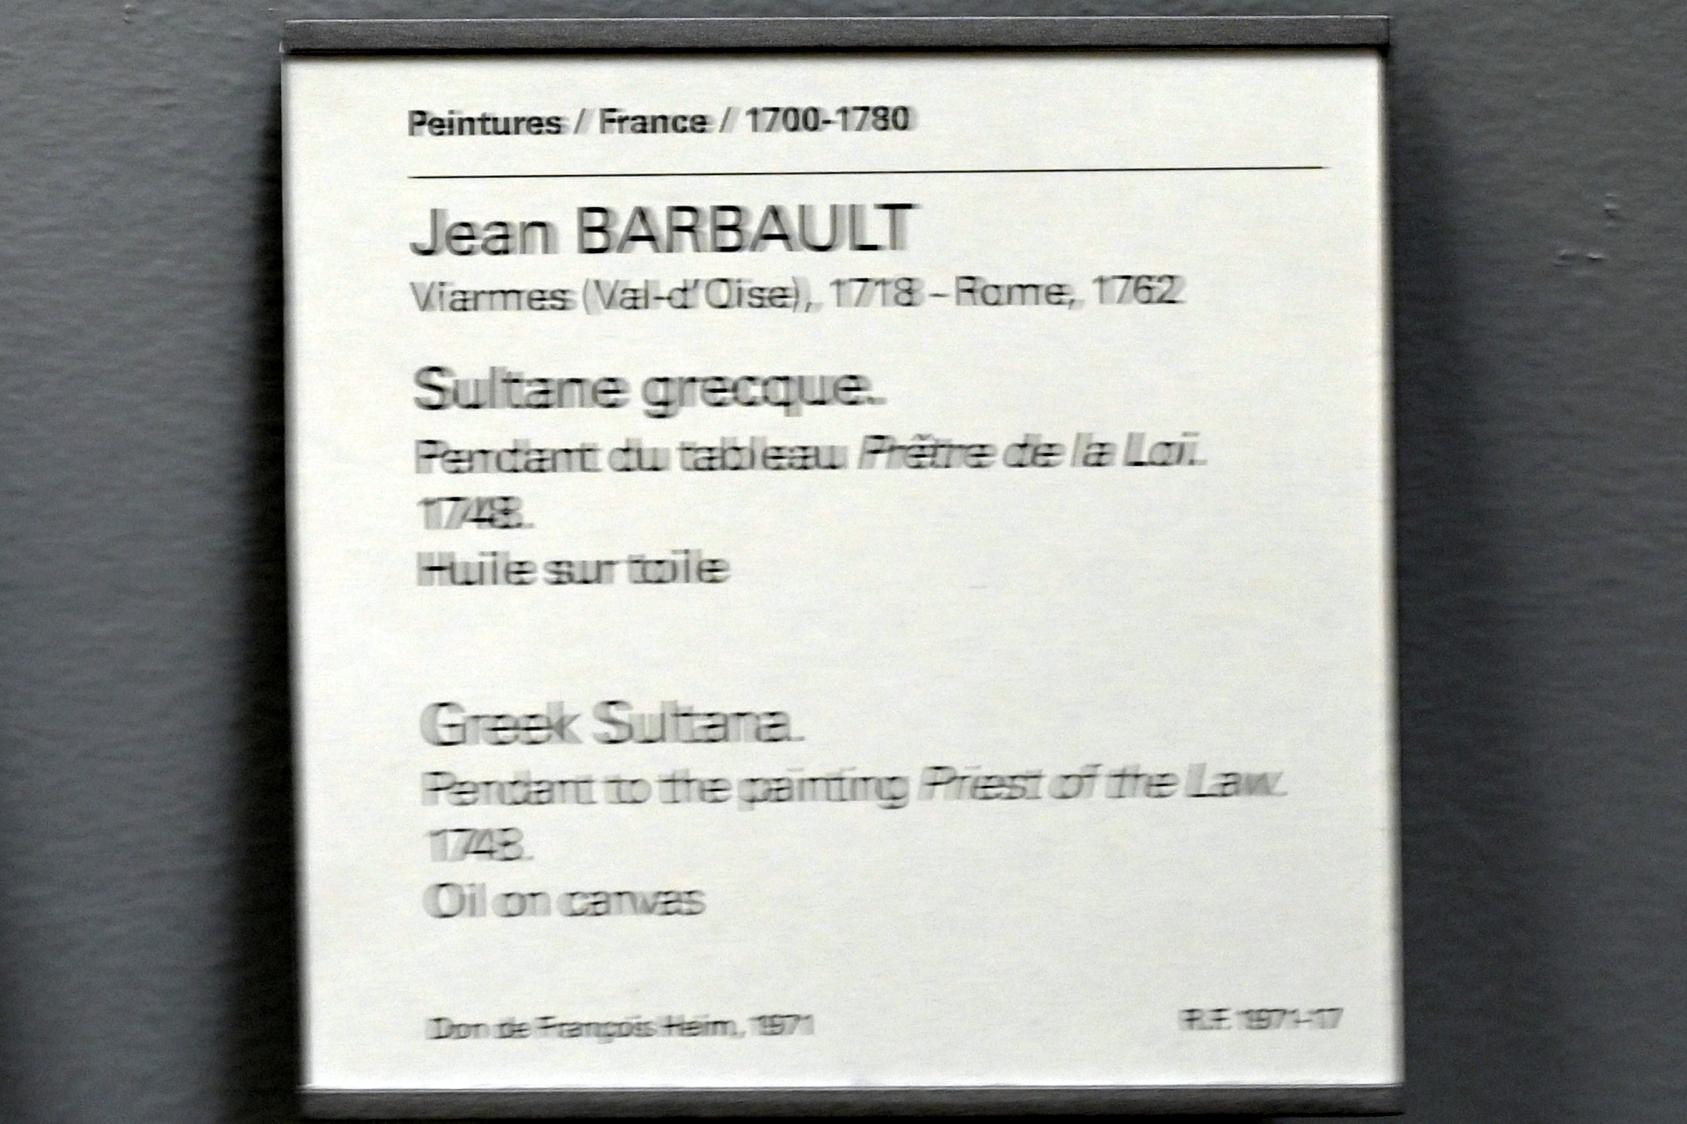 Jean Barbault (1748), Griechischer Sultan, Paris, Musée du Louvre, Saal 921, 1748, Bild 2/2